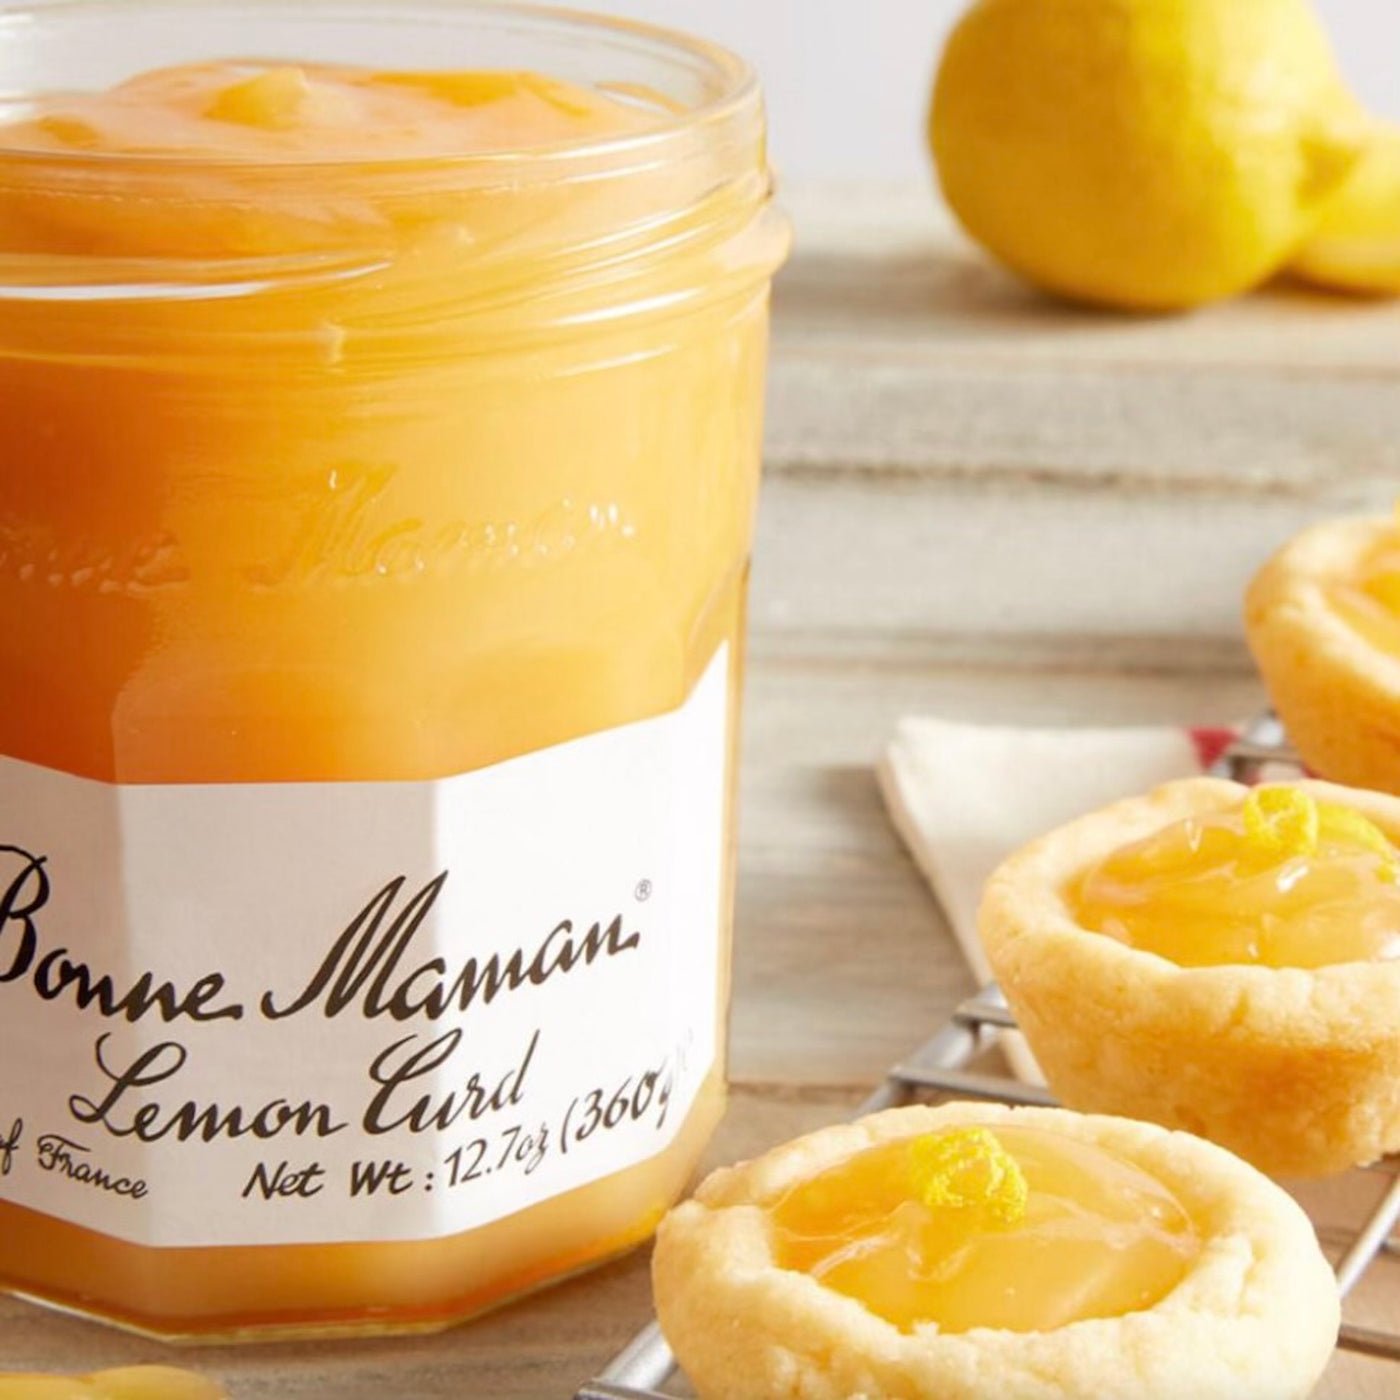 Lemon Marmelade Jam | Bonne maman | 370g